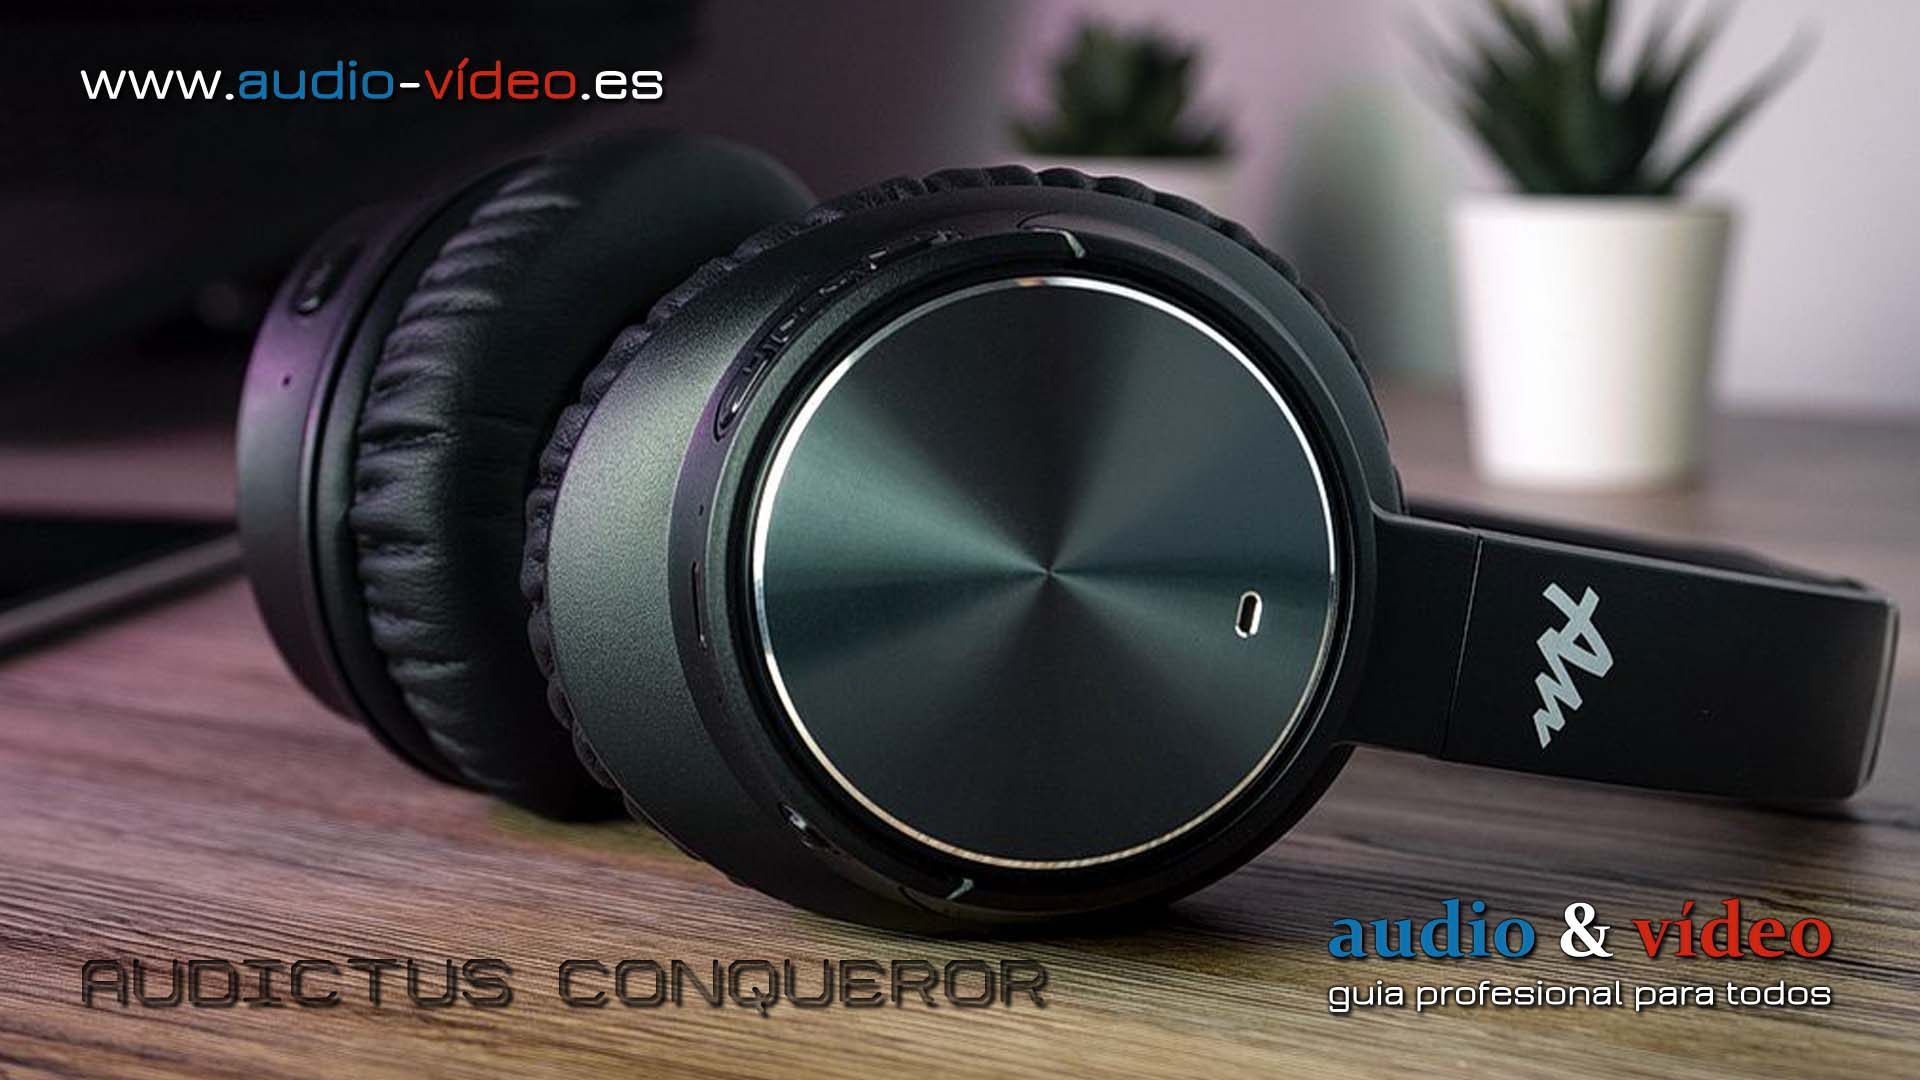 Auriculares Bluetooth 5.0 – Audictus Conqueror